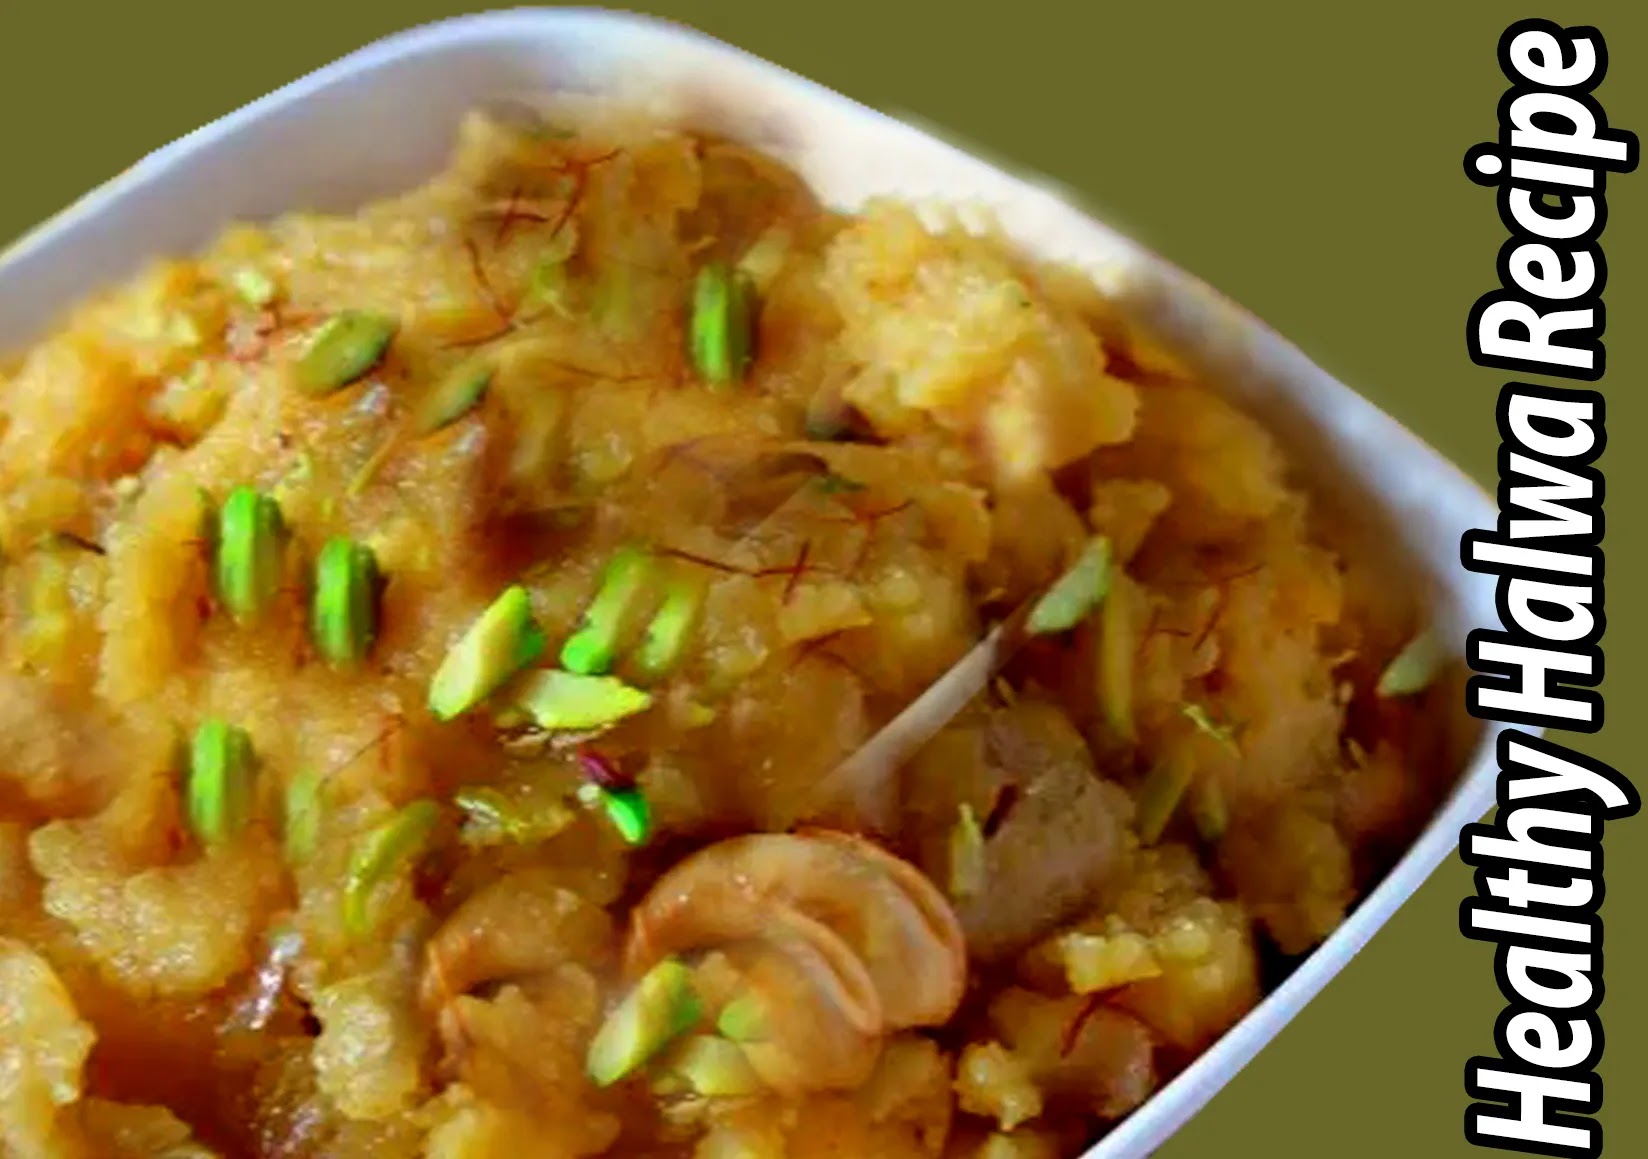 Moong Dal Halwa recipe at Home in Hindi